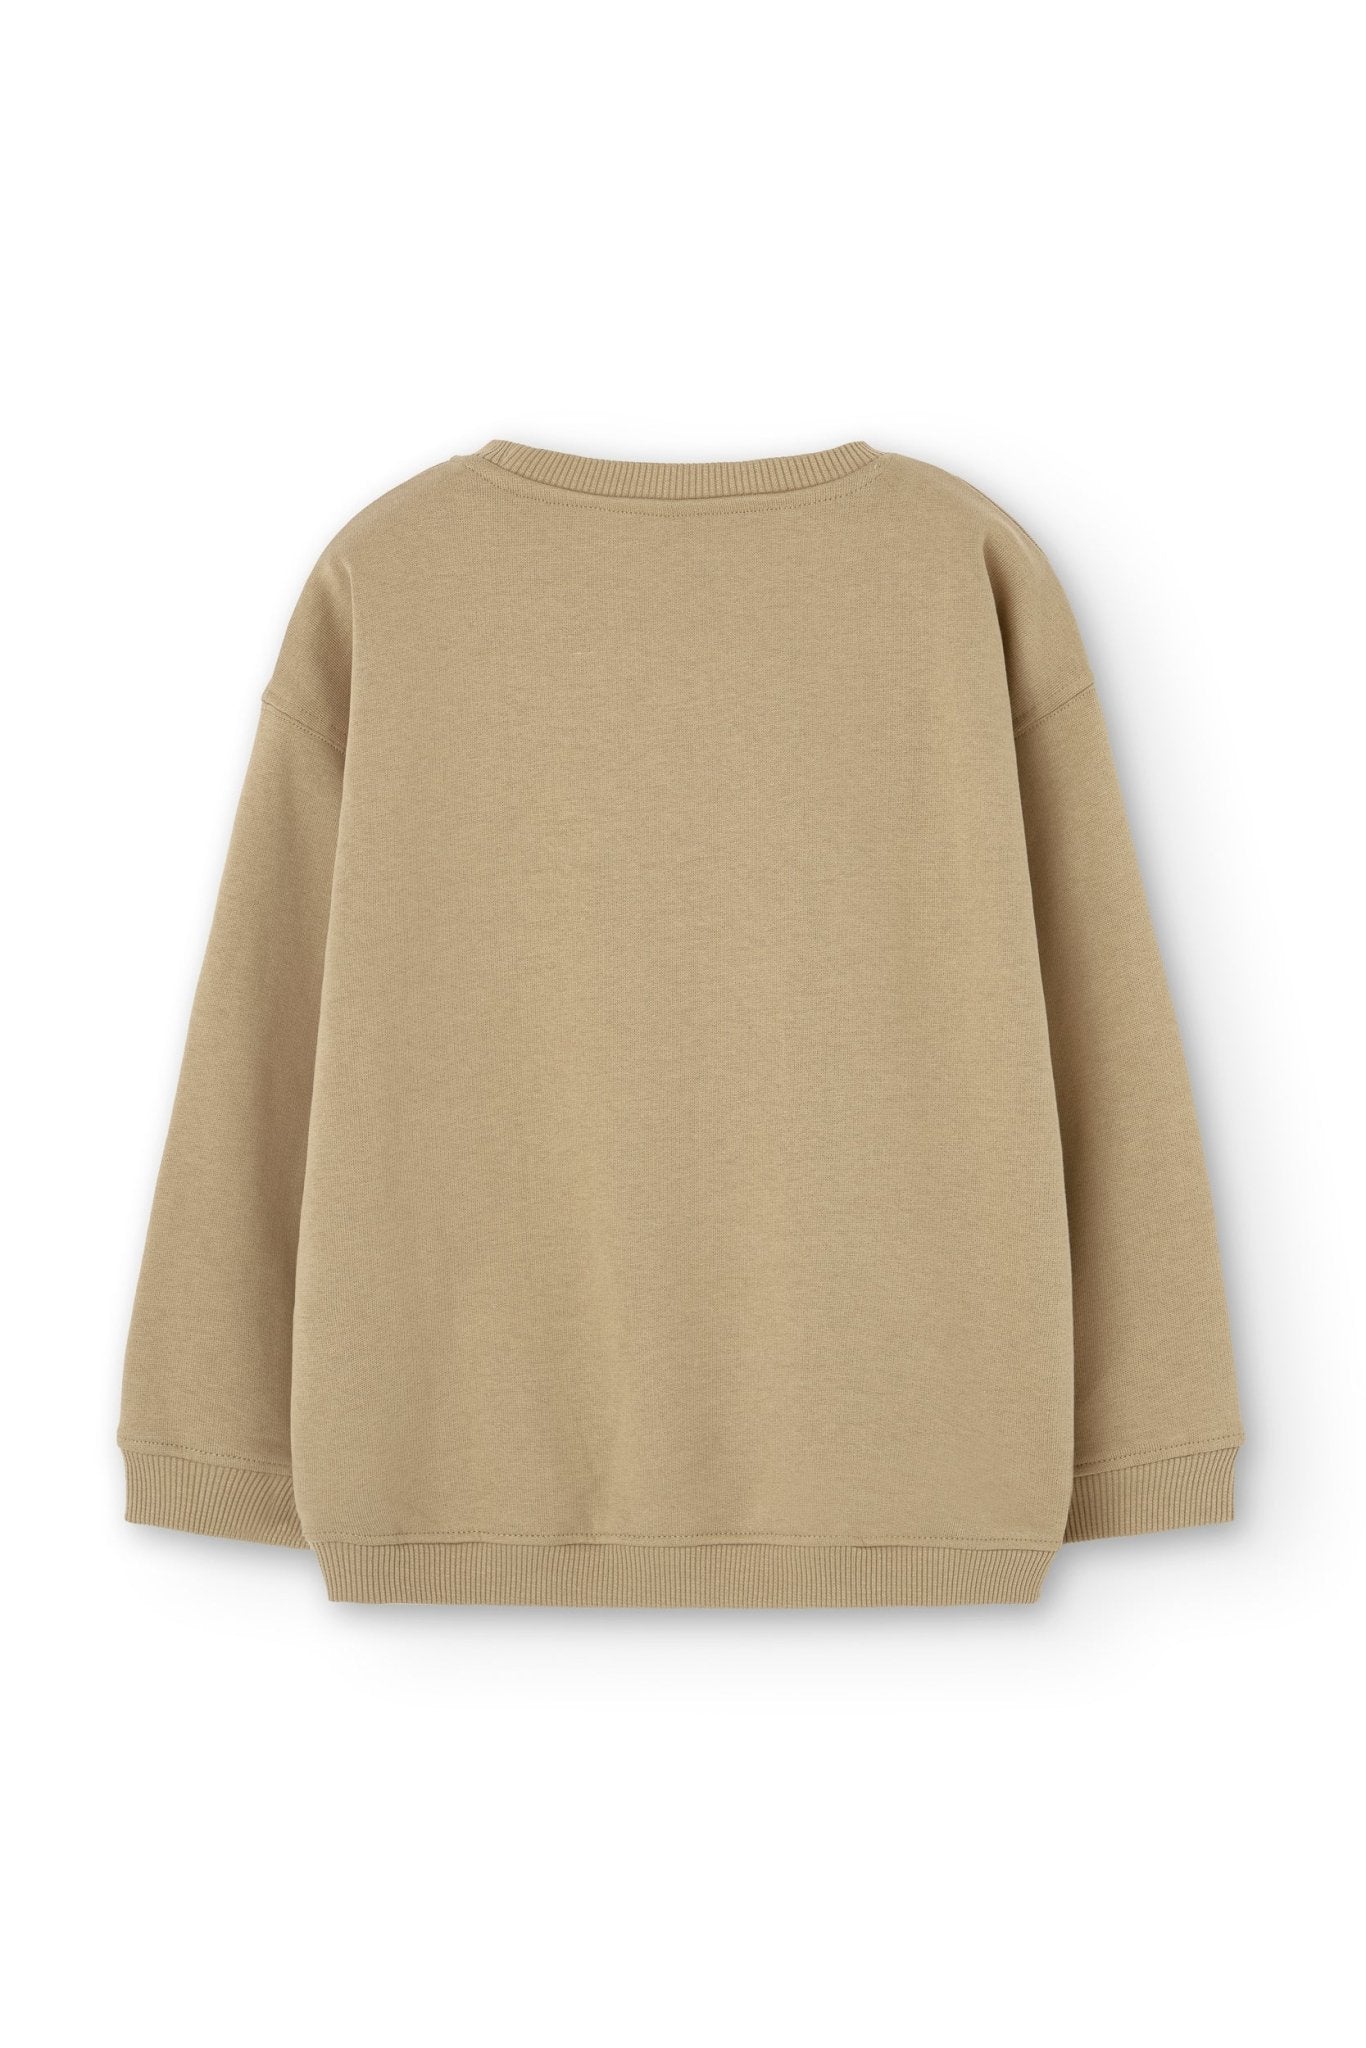 Gaby sweatshirt ranglan sleeves beige - TIRALAHILACHA